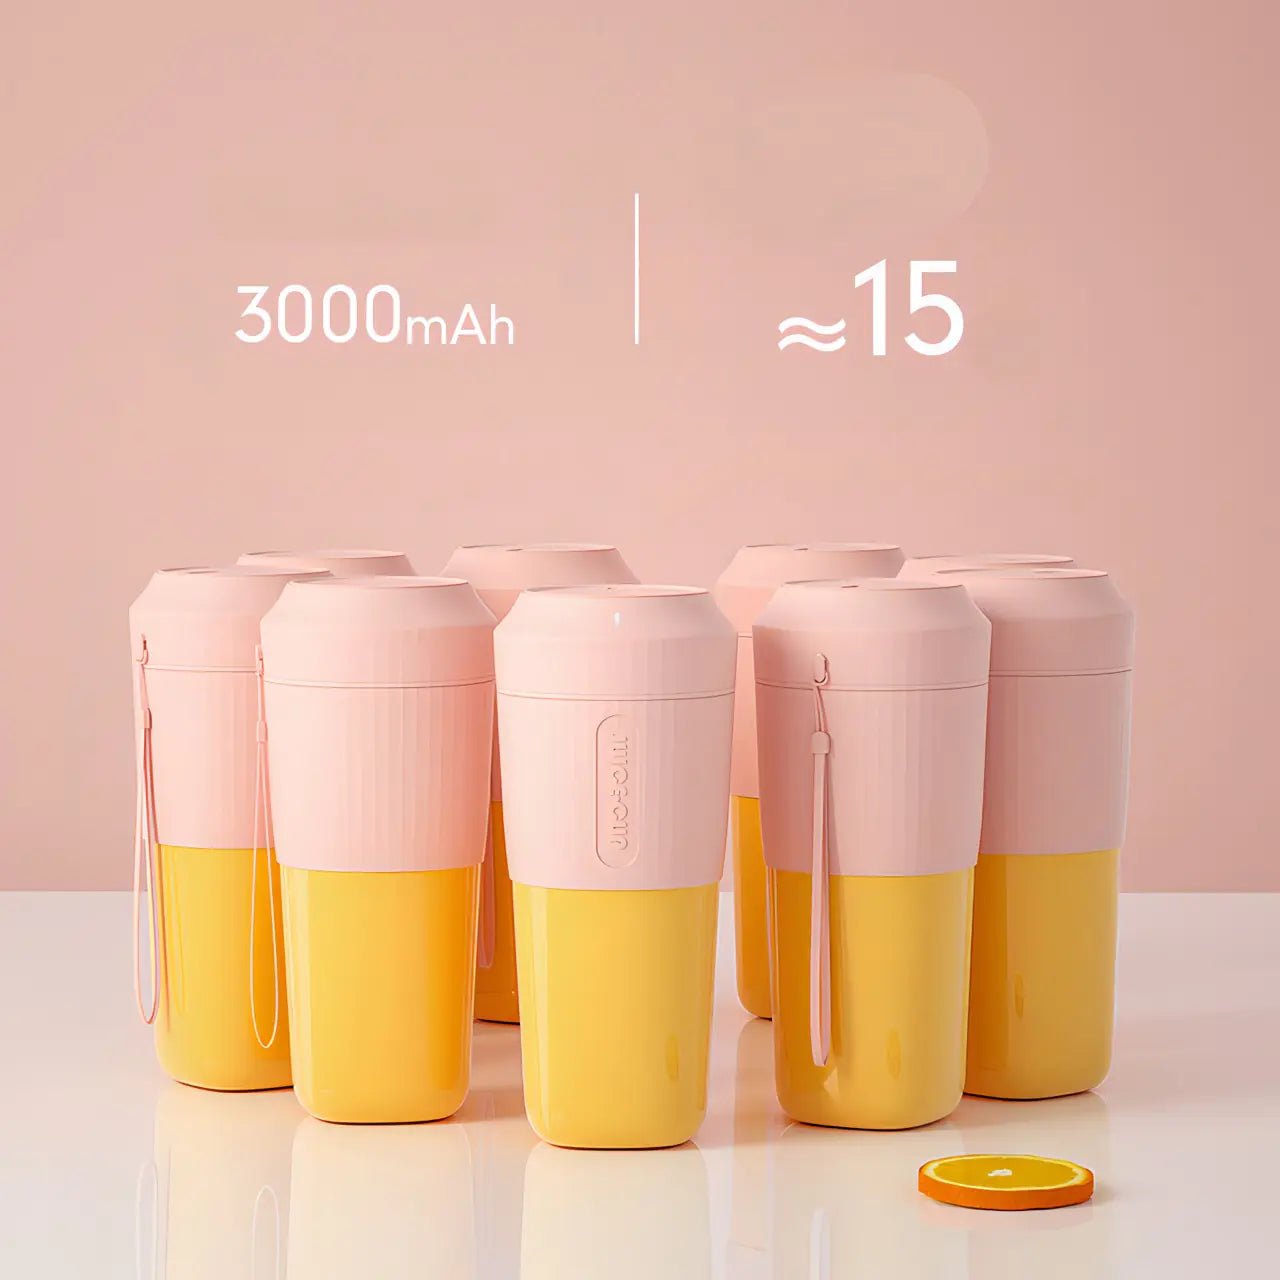 Juice Cup - Blender - Rheasie & Co